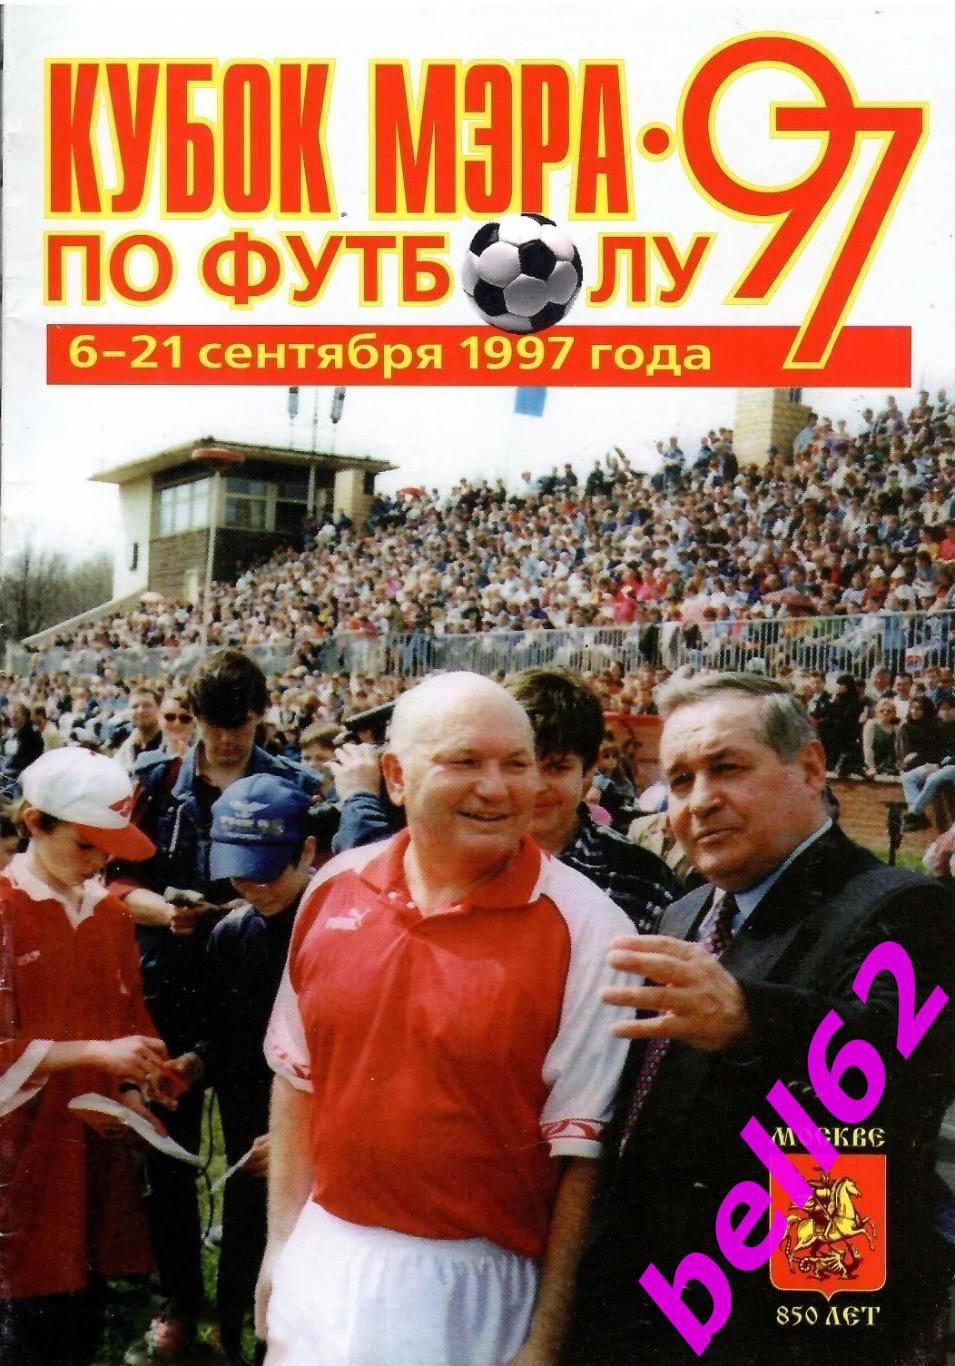 Турнир Кубок Мэра Москвы по футболу-6-21.09.1997 г.